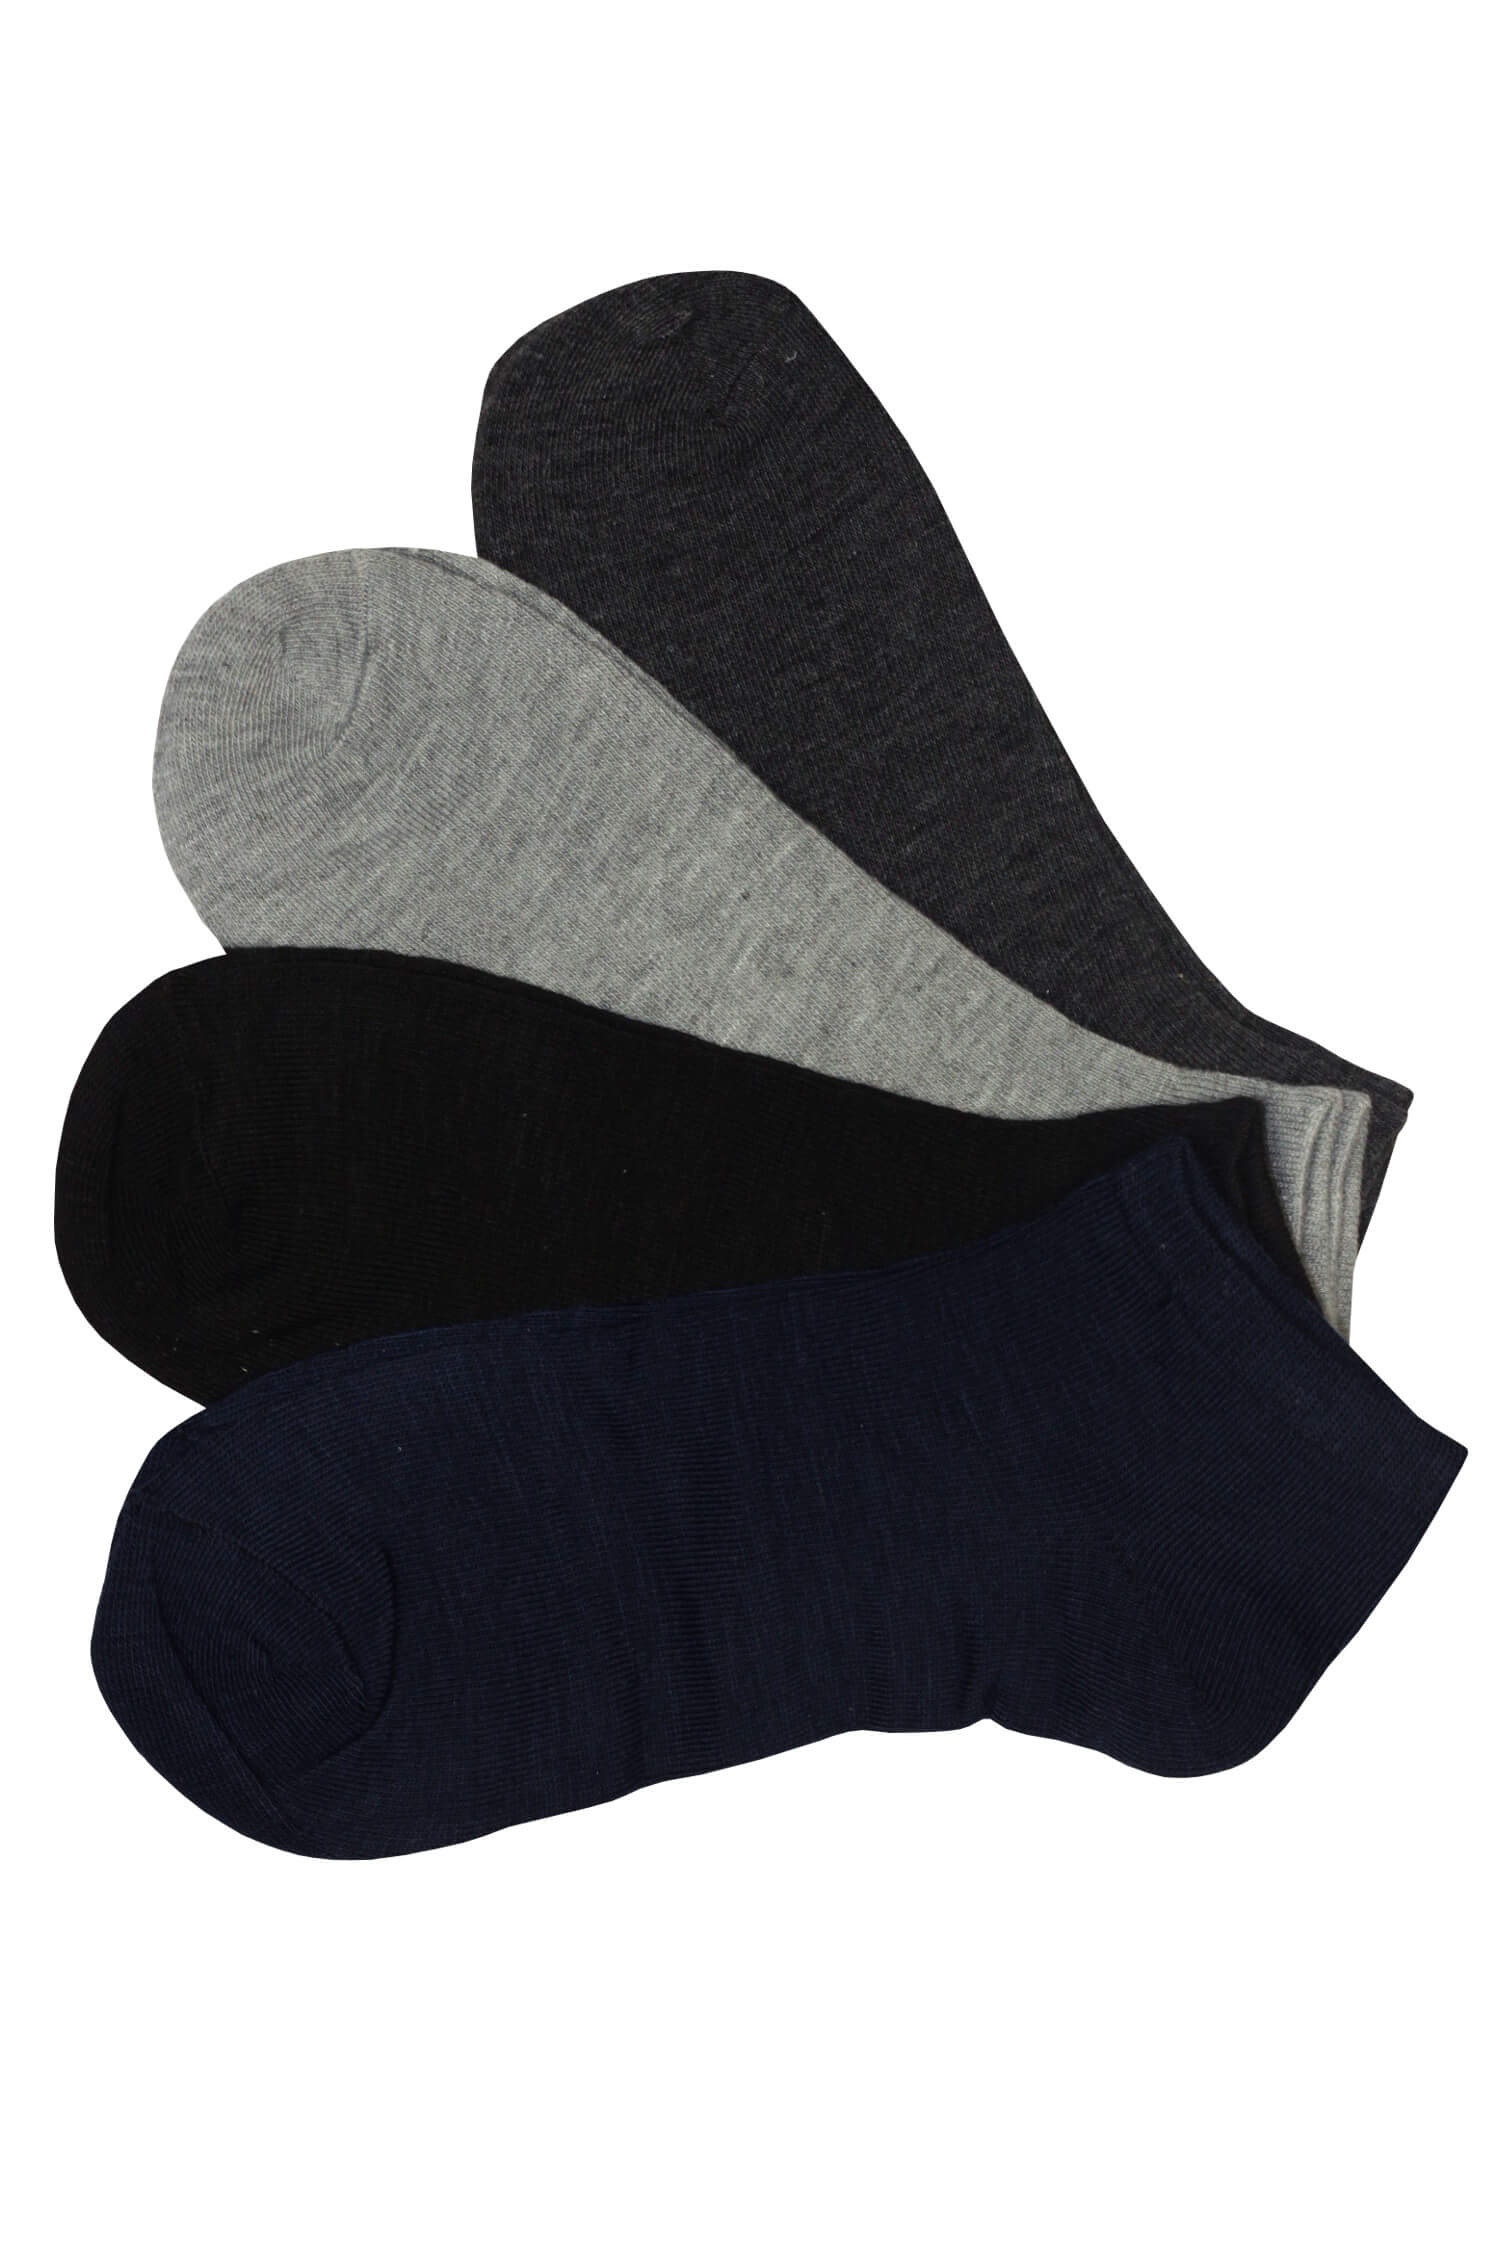 Levné pánské kotníčkové ponožky EM1001B - 3 páry 40-44 vícebarevná